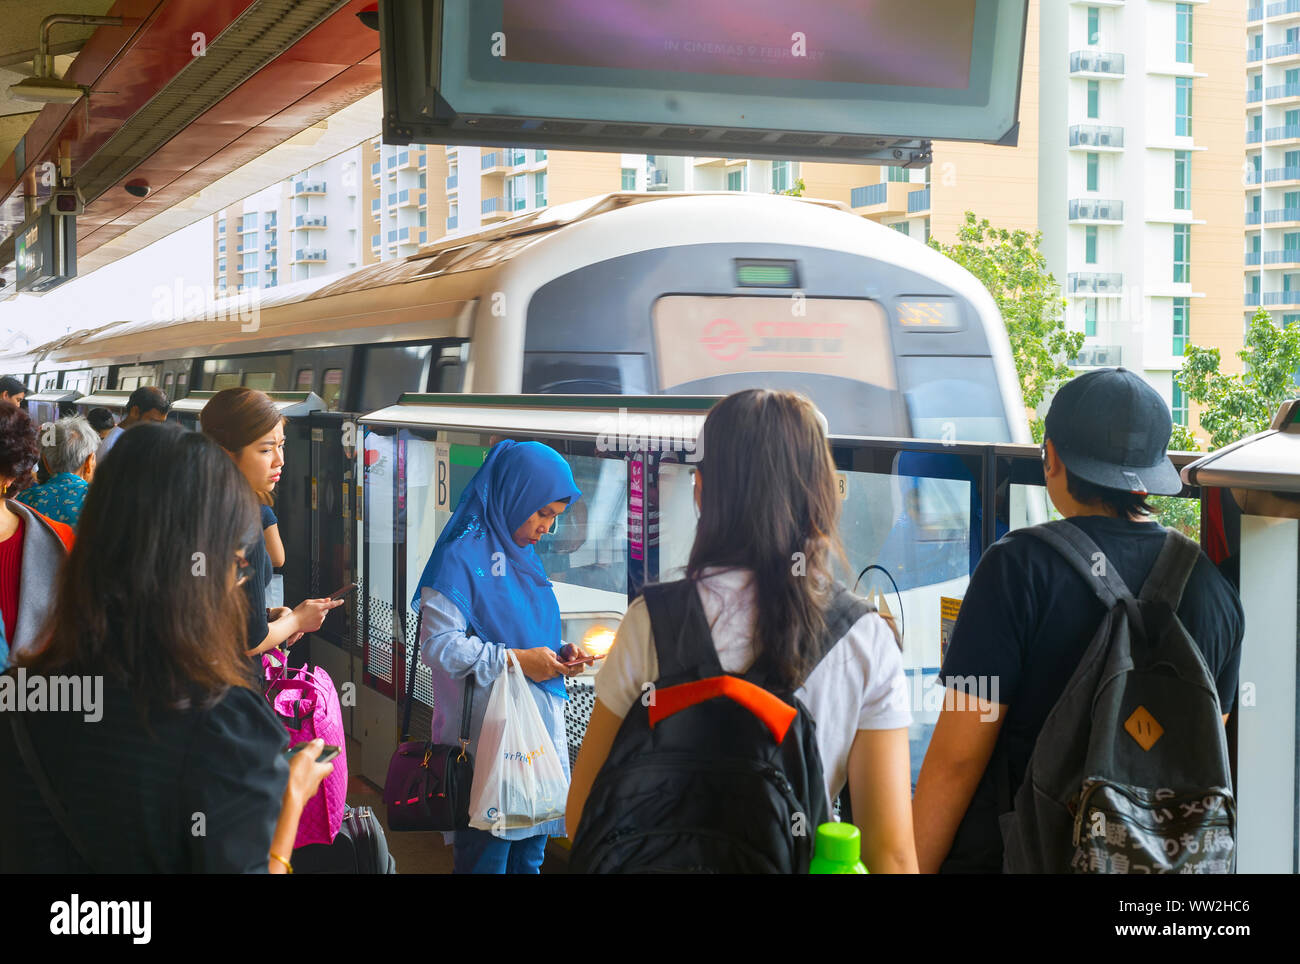 Singapur - Feb 15, 2017: Los pasajeros esperando llegar Singapore Mass Rapid Transit (MRT) Tren. El MRT tiene 102 estaciones y es la segunda más antigua Foto de stock